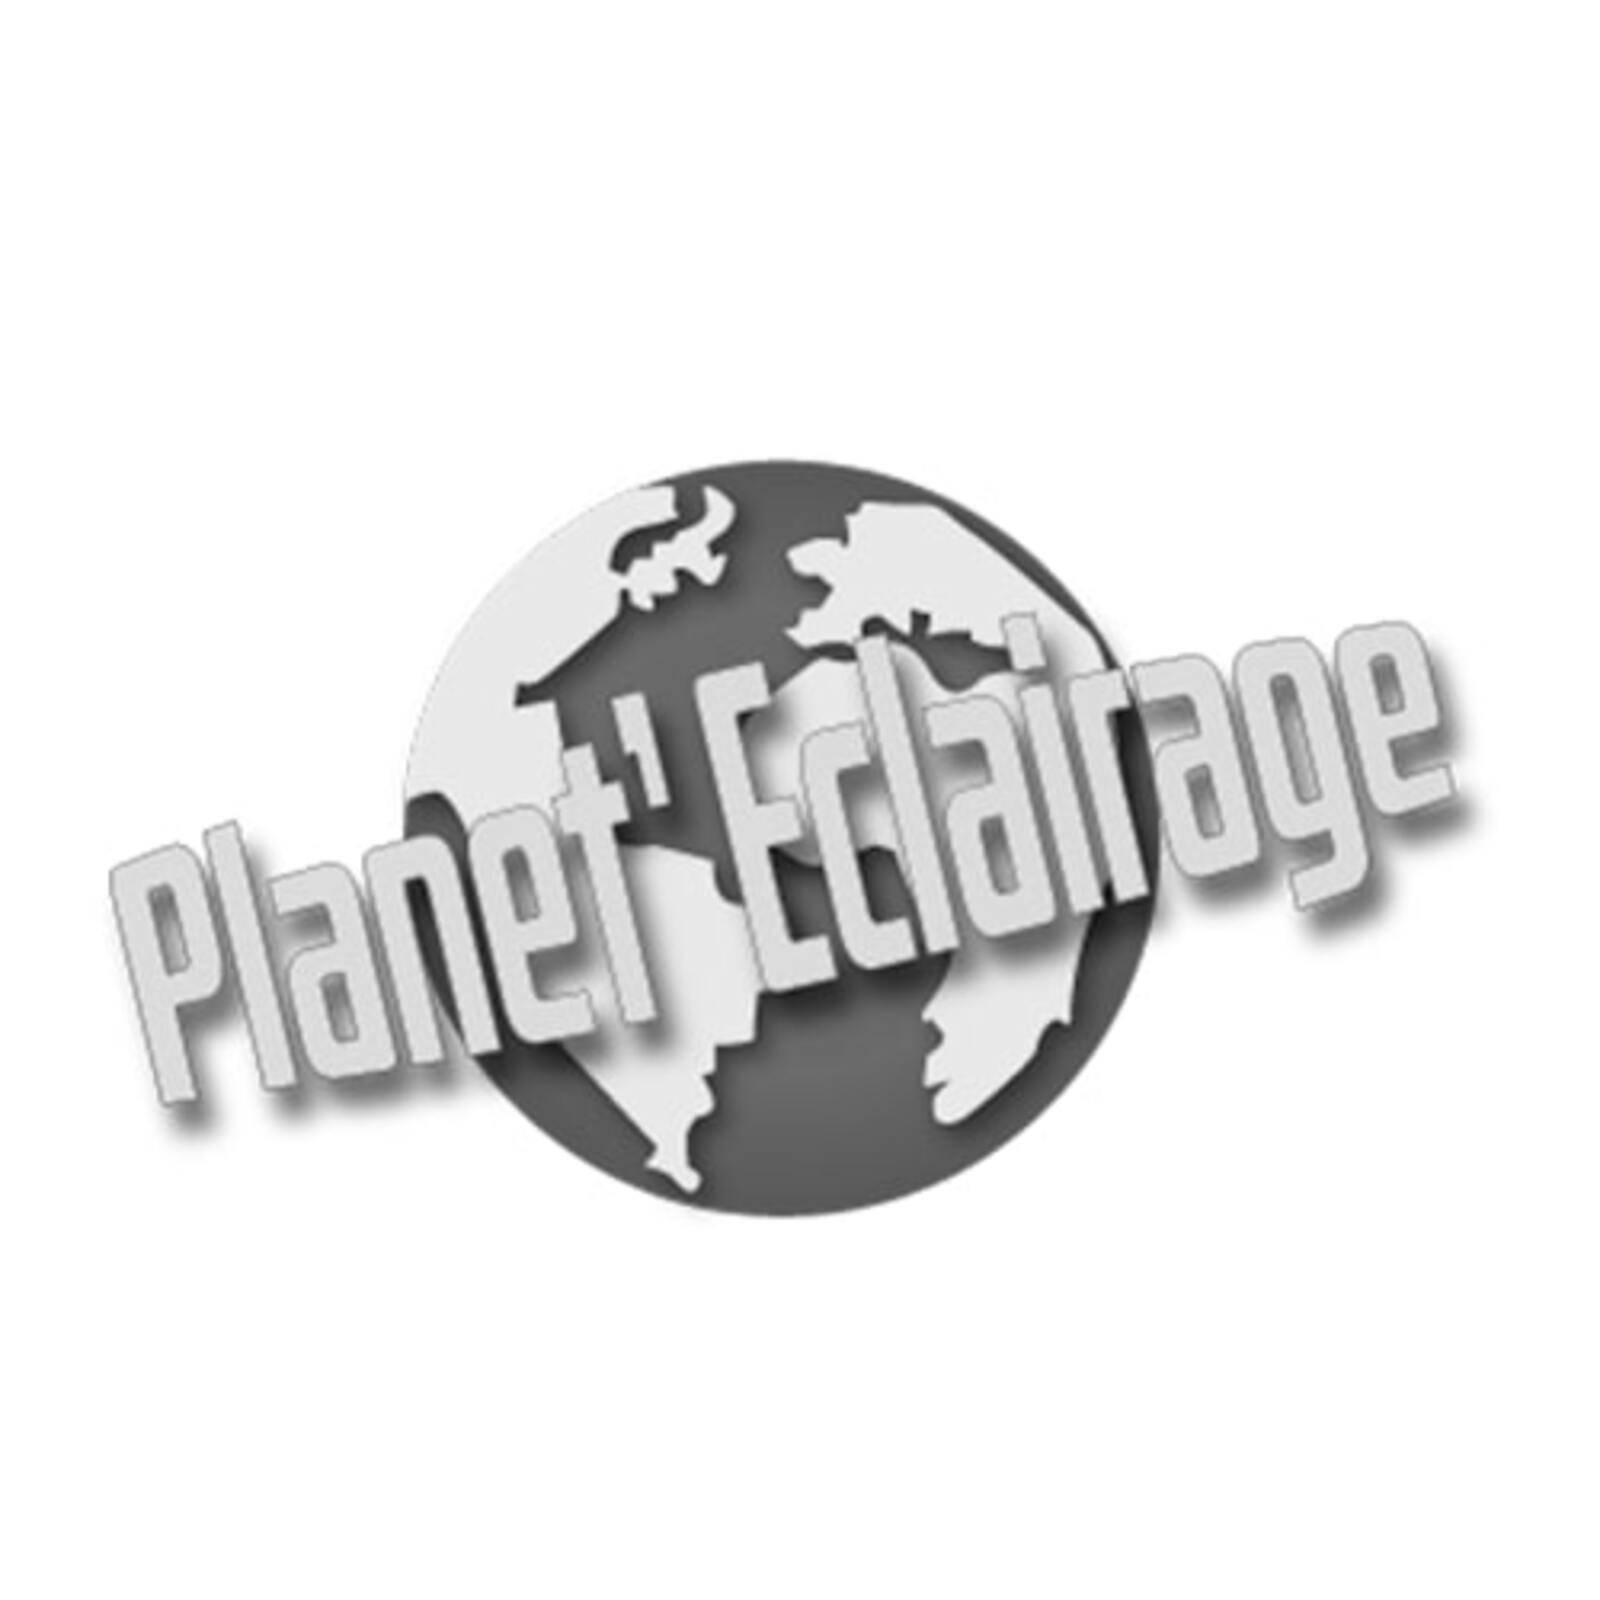 Planet'Eclairage